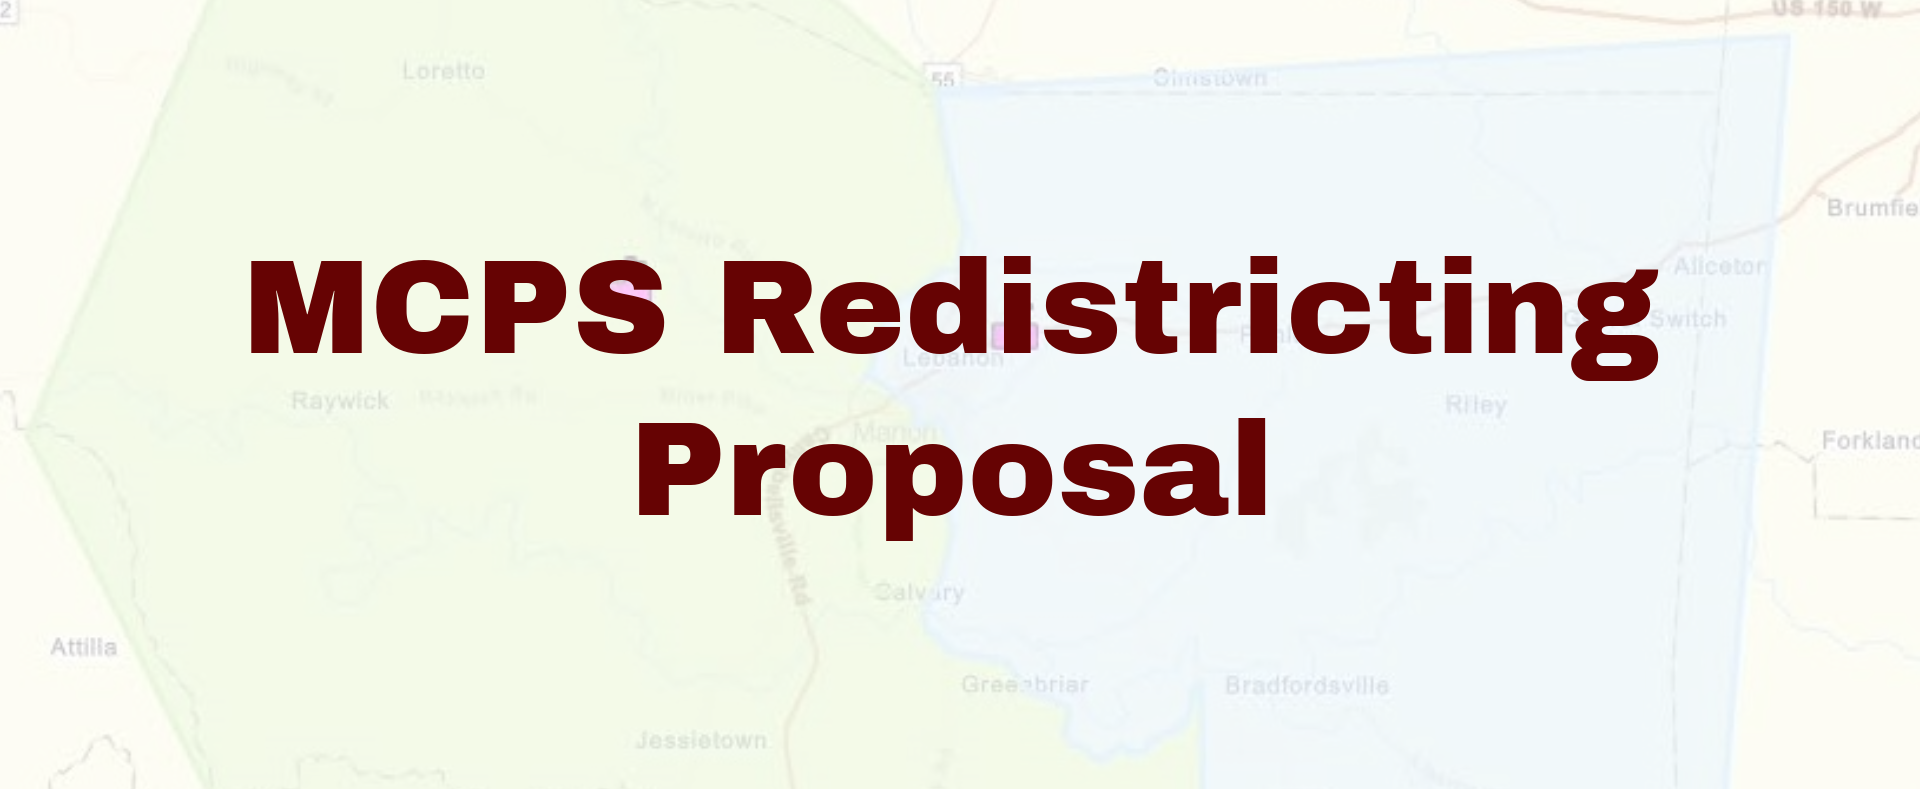 MCPS Redistricting Proposal